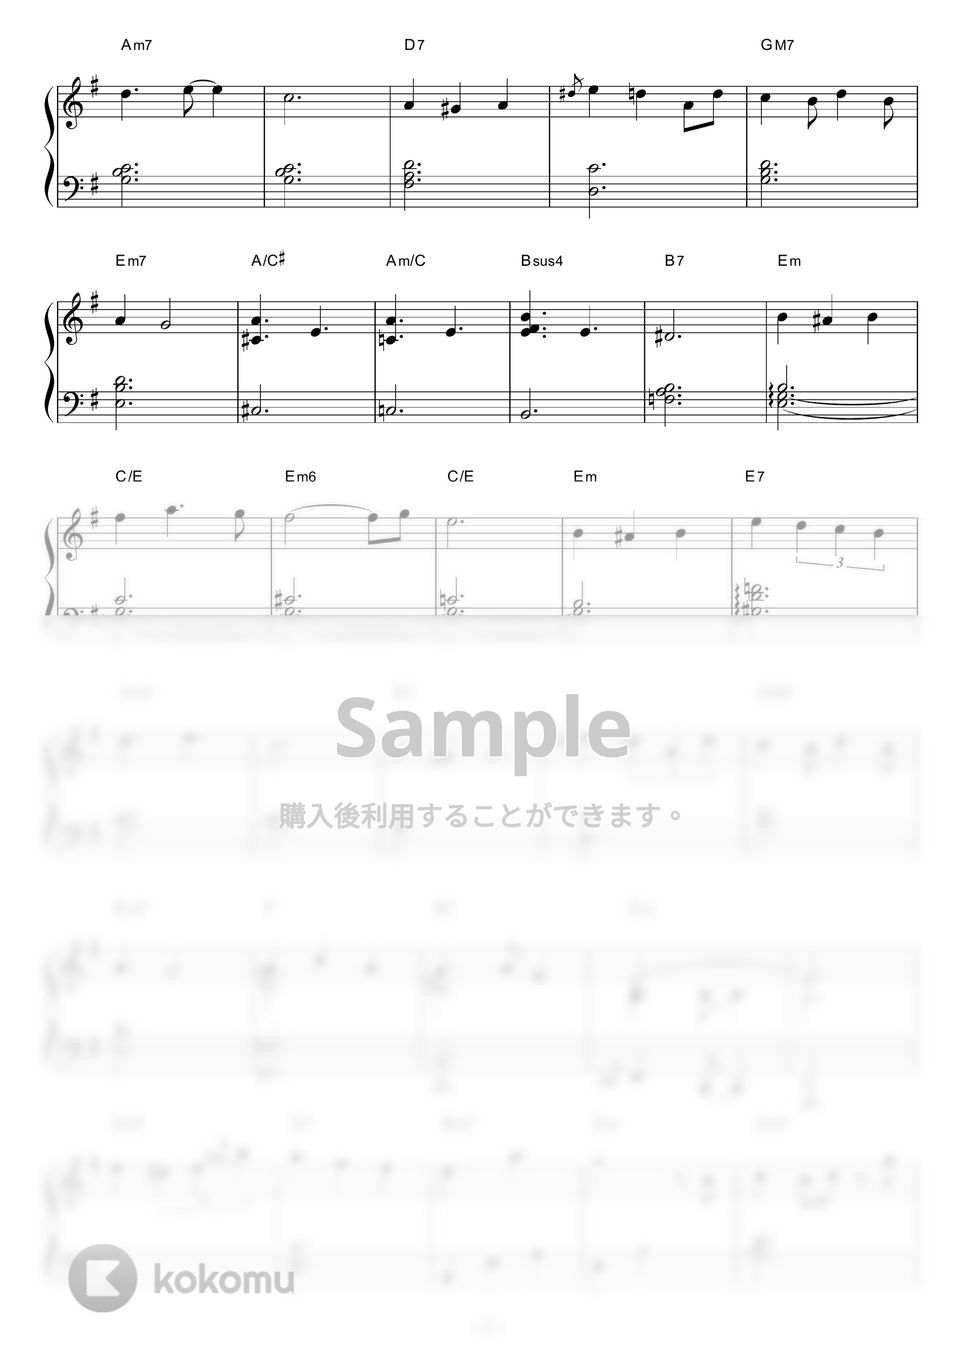 大野雄二 - 愛のバラード (Jazz.ver) by piano*score